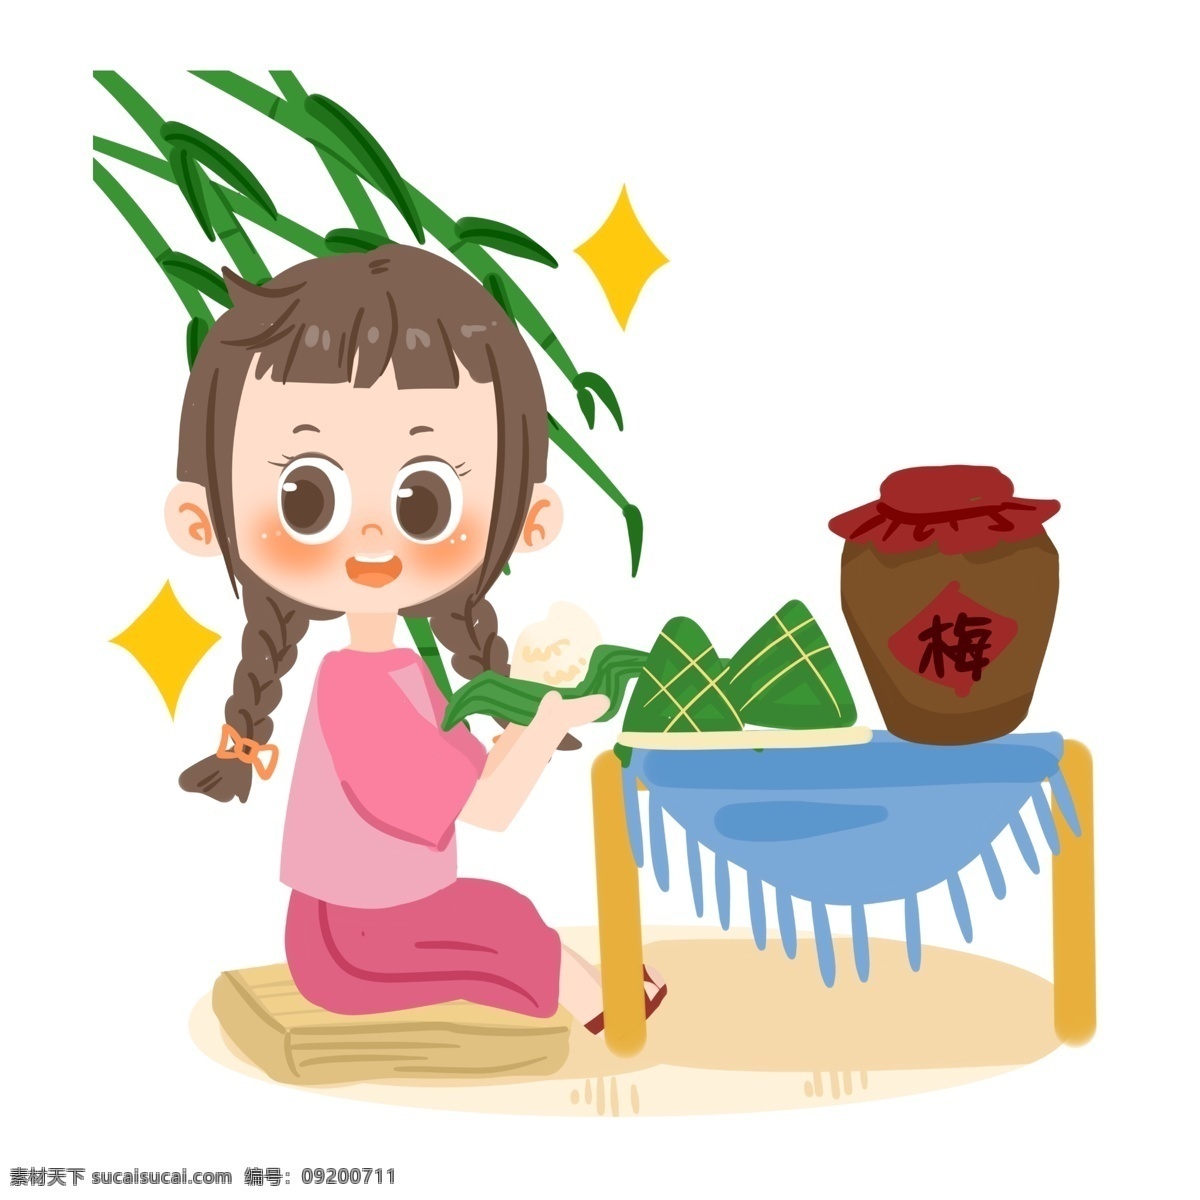 端午节 卡通 女孩 吃 粽子 星星 梅子酒 竹子 开心 端午习俗 桌子